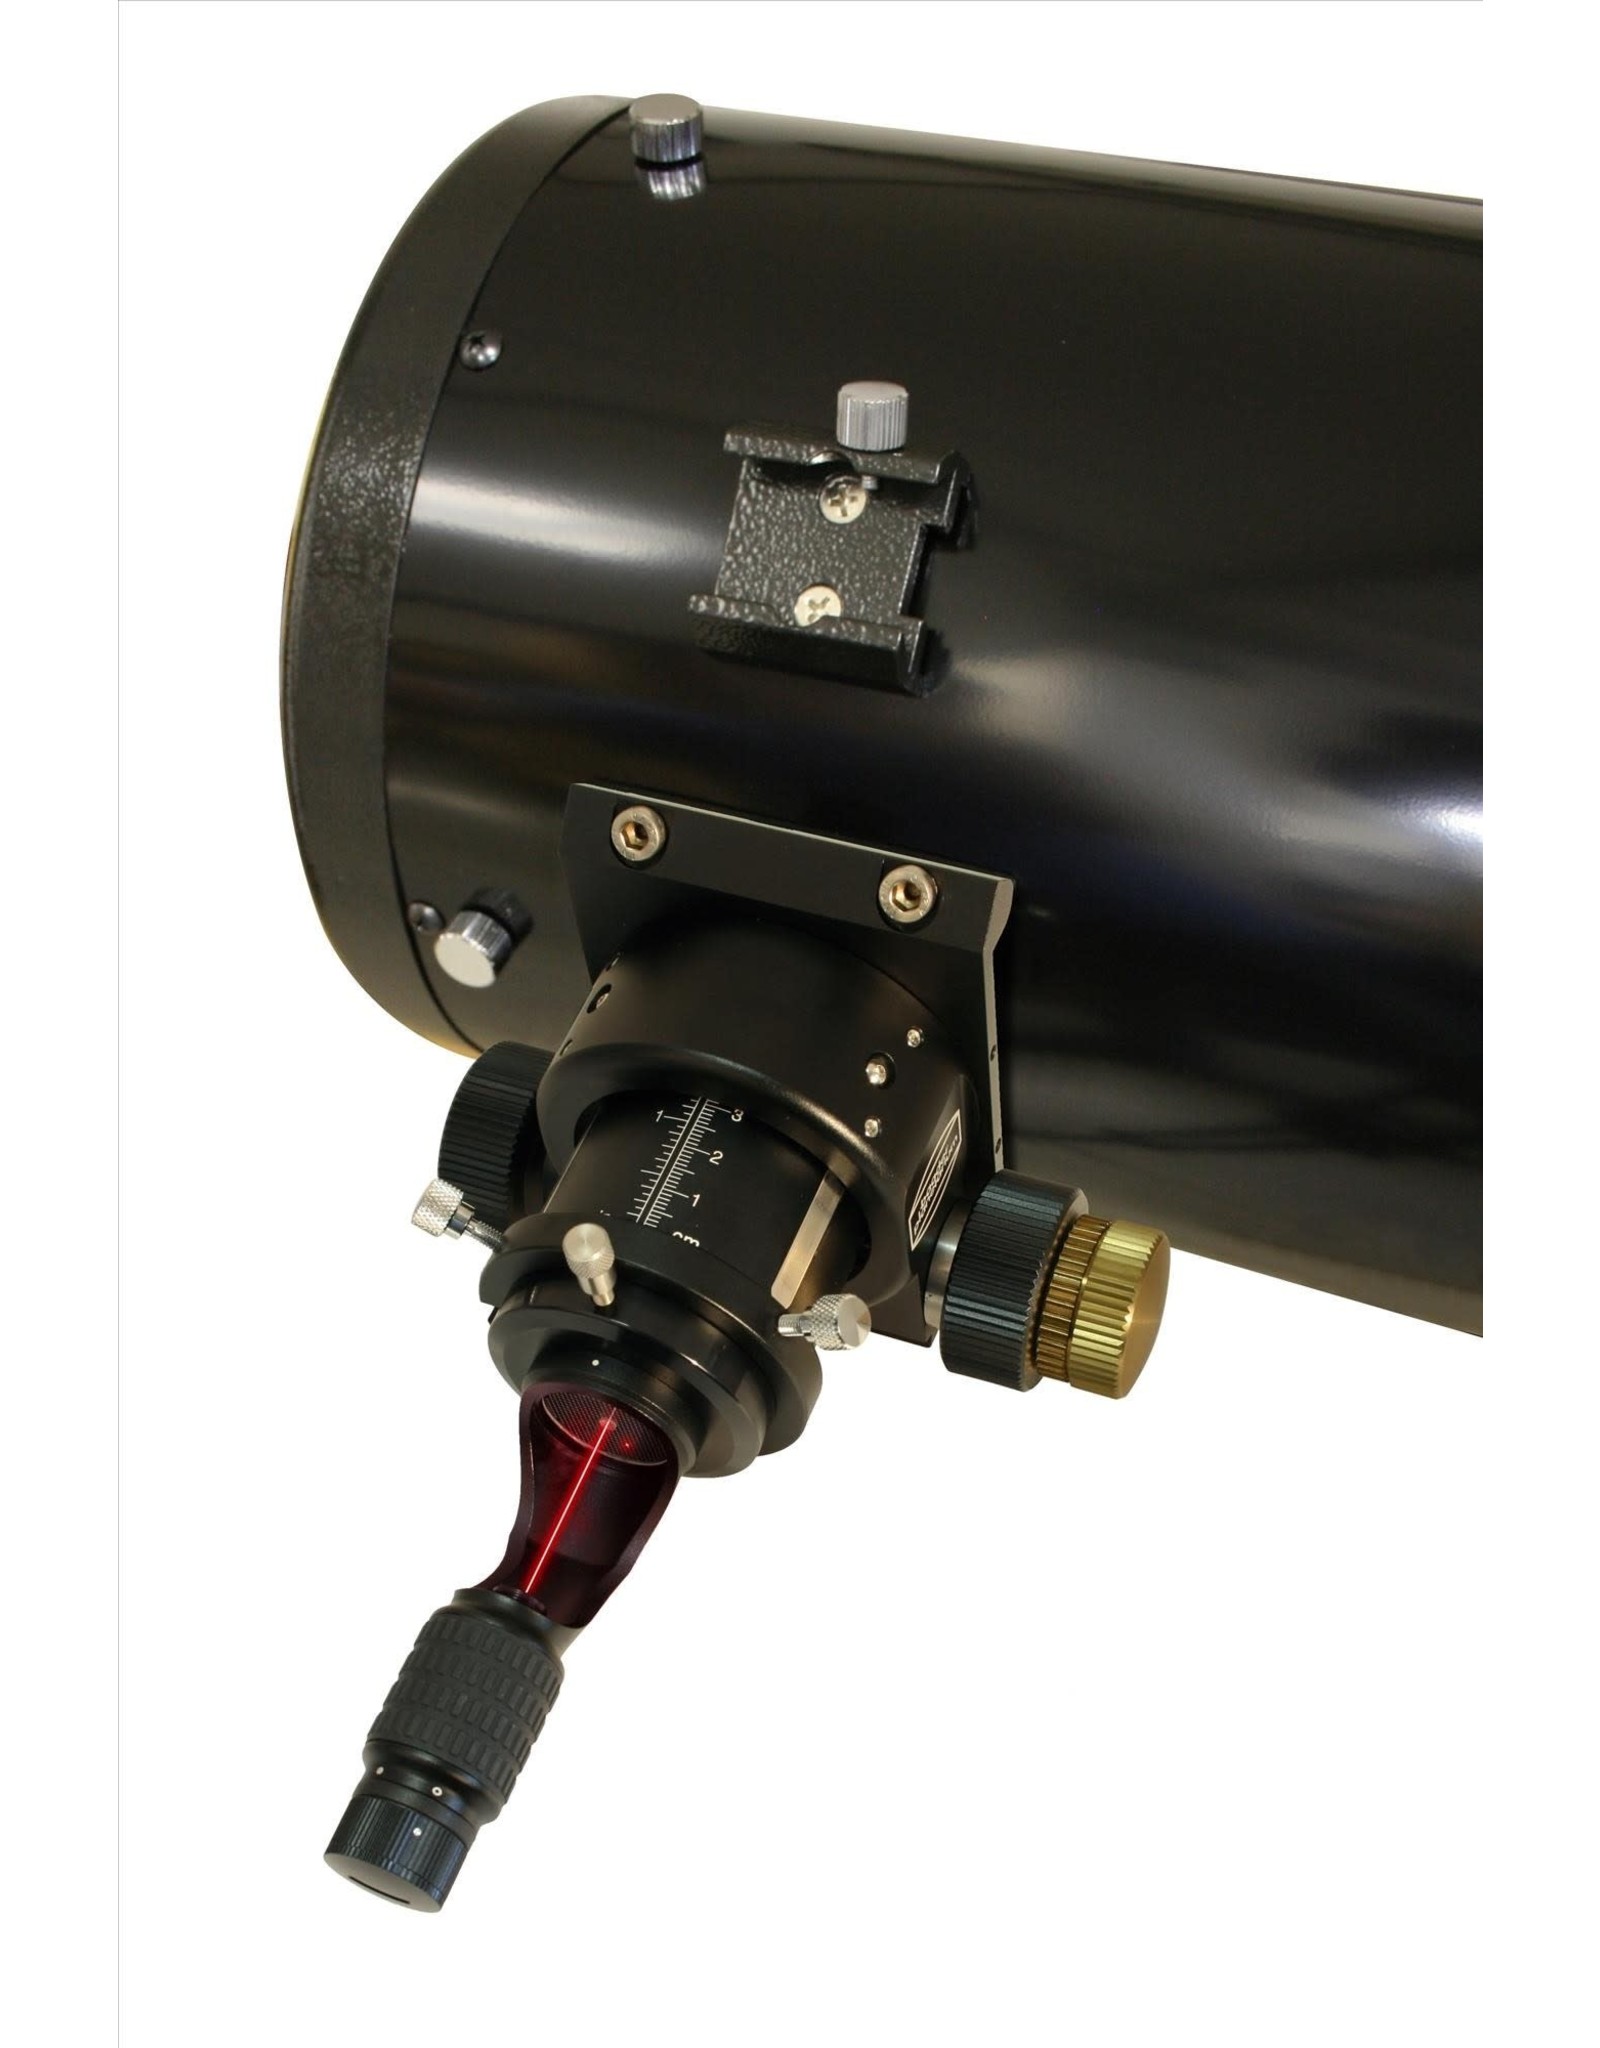 Baader Planetarium Baader Laser Colli - Mark III